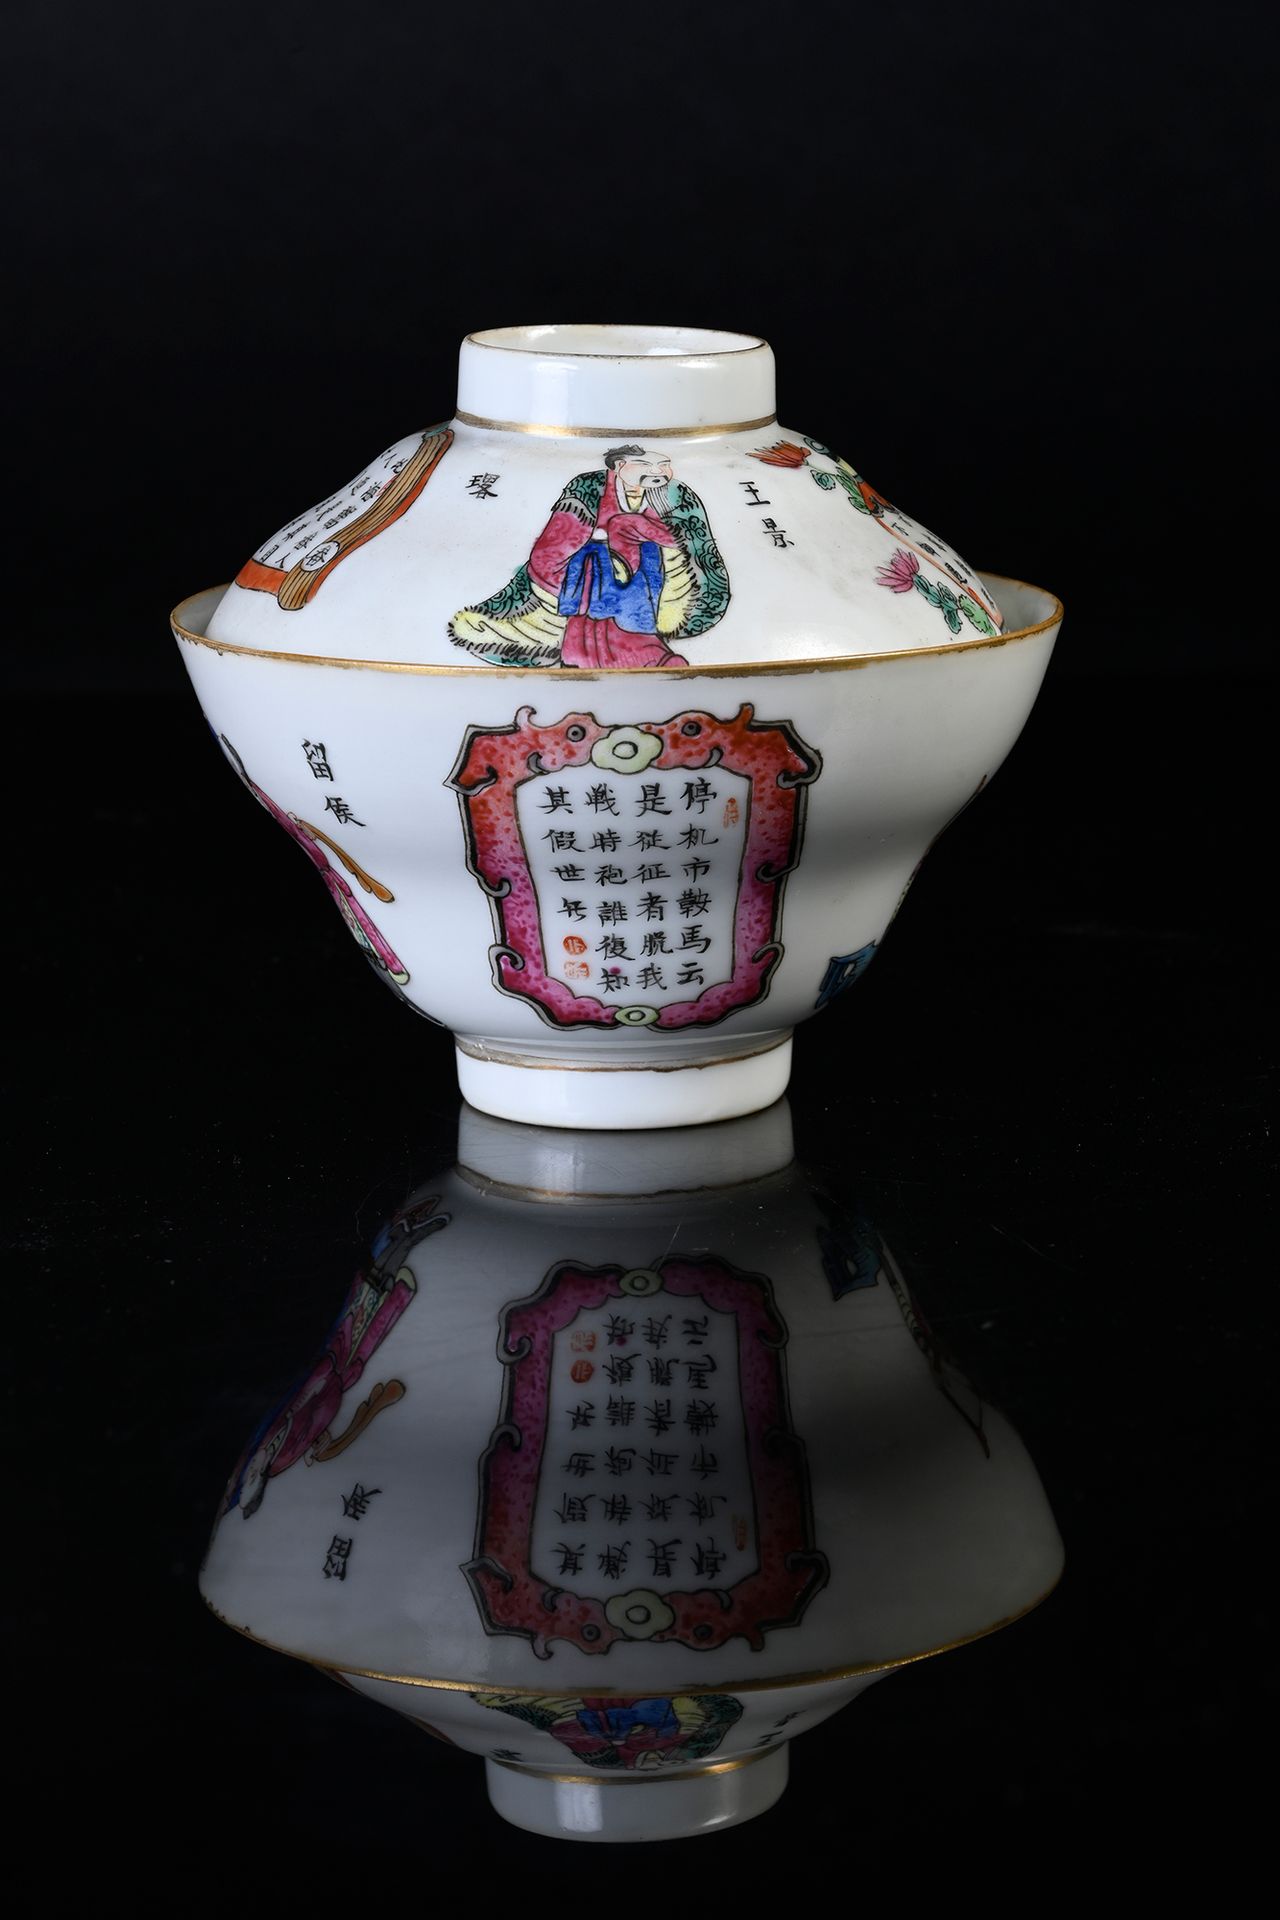 CHINE, XIXe siècle 有盖小瓷碗
用粉彩装饰的 "吴双浦"，上面有仙人和诗句的刻画。咸丰款，有六个字。
高：9厘米
直径11厘米
盖子上有裂缝
&hellip;